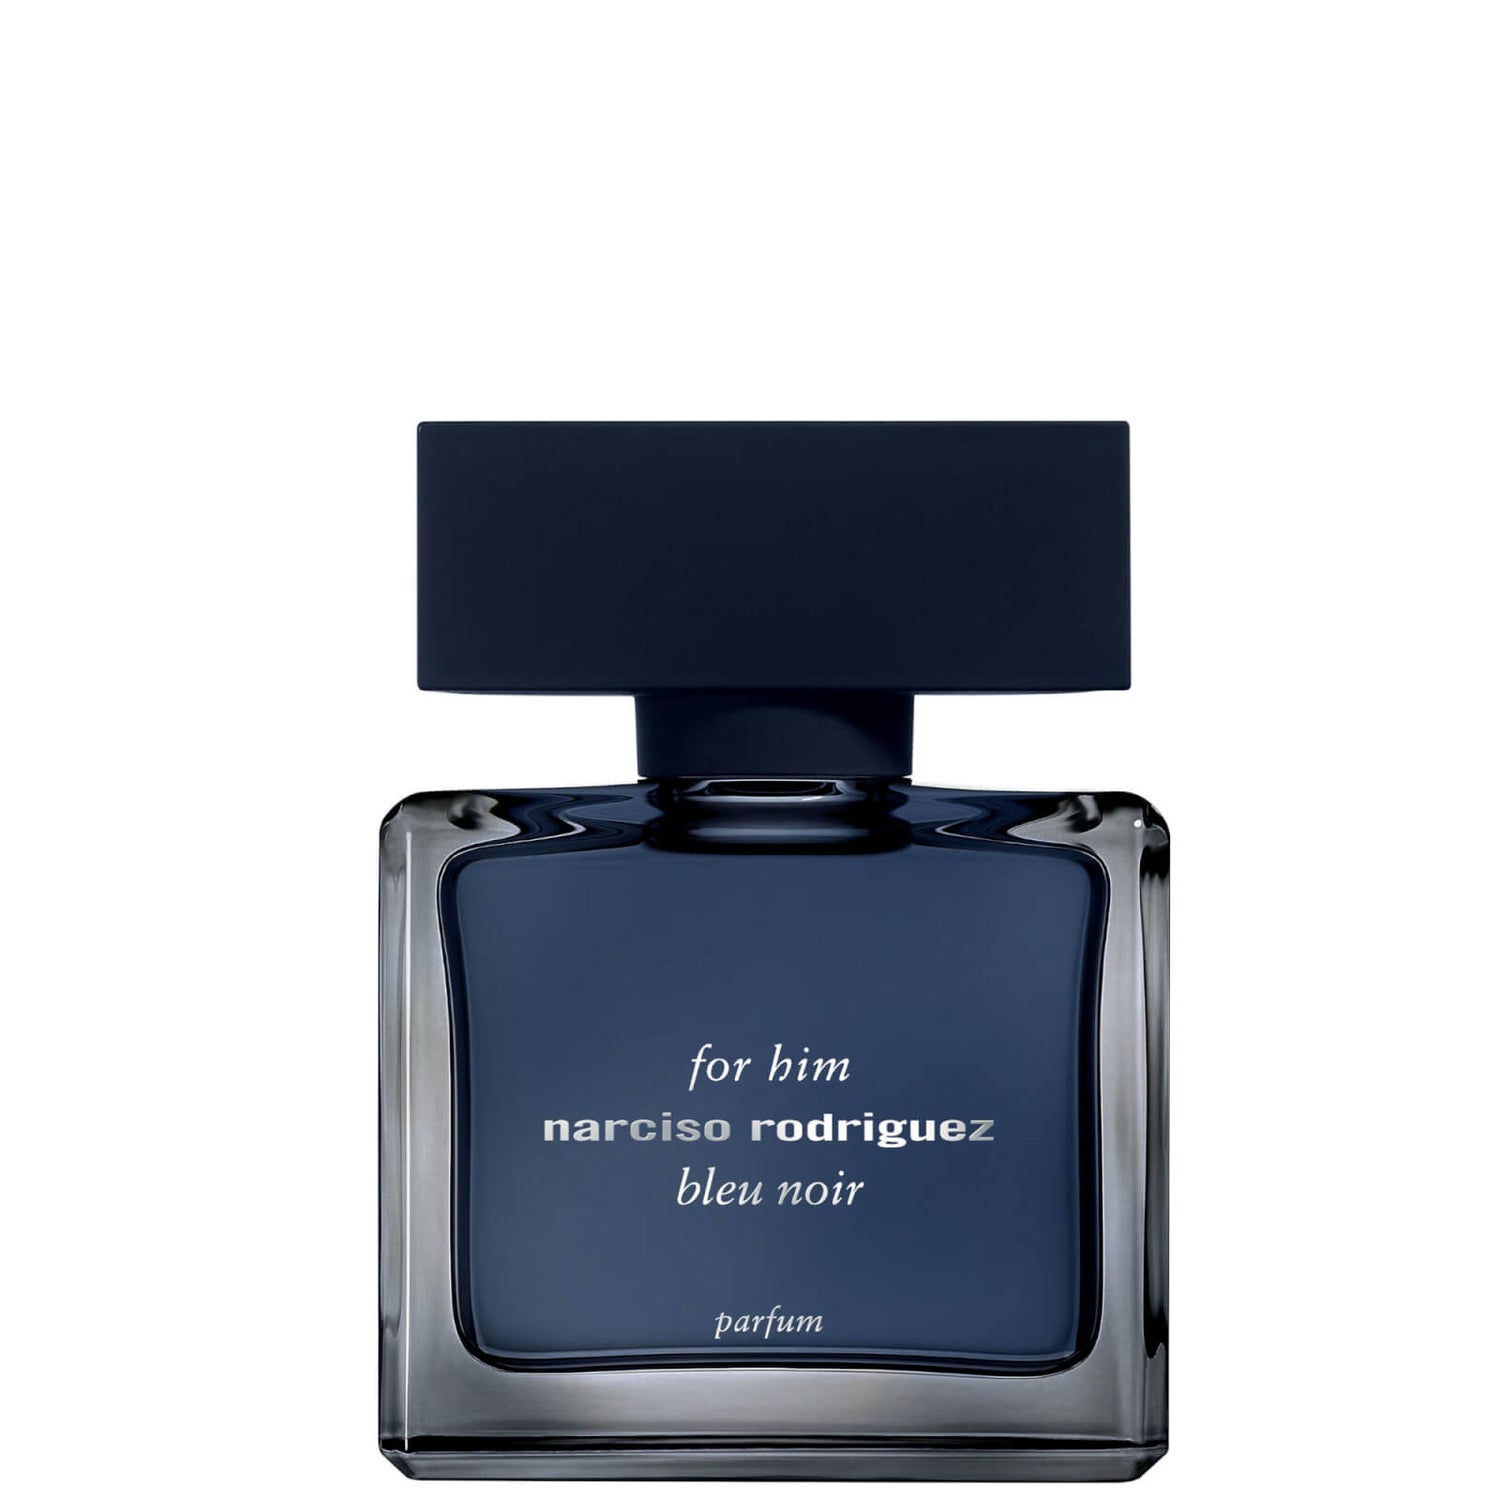 Narciso Rodriguez for Him Bleu Noir Eau de Parfum - 50ml